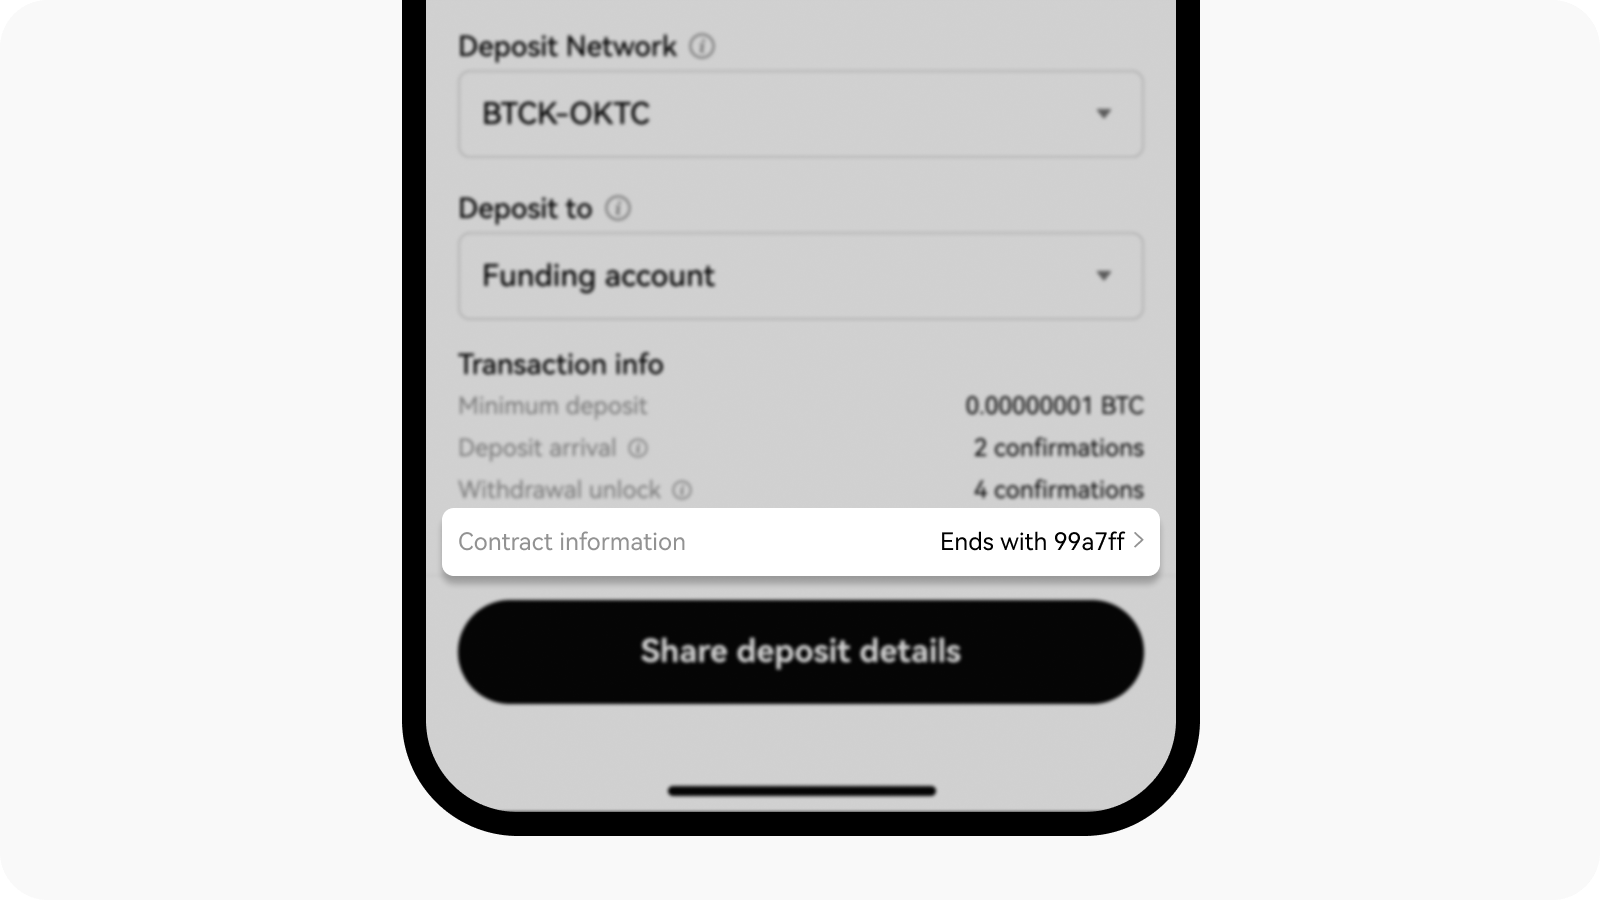 App deposit share details